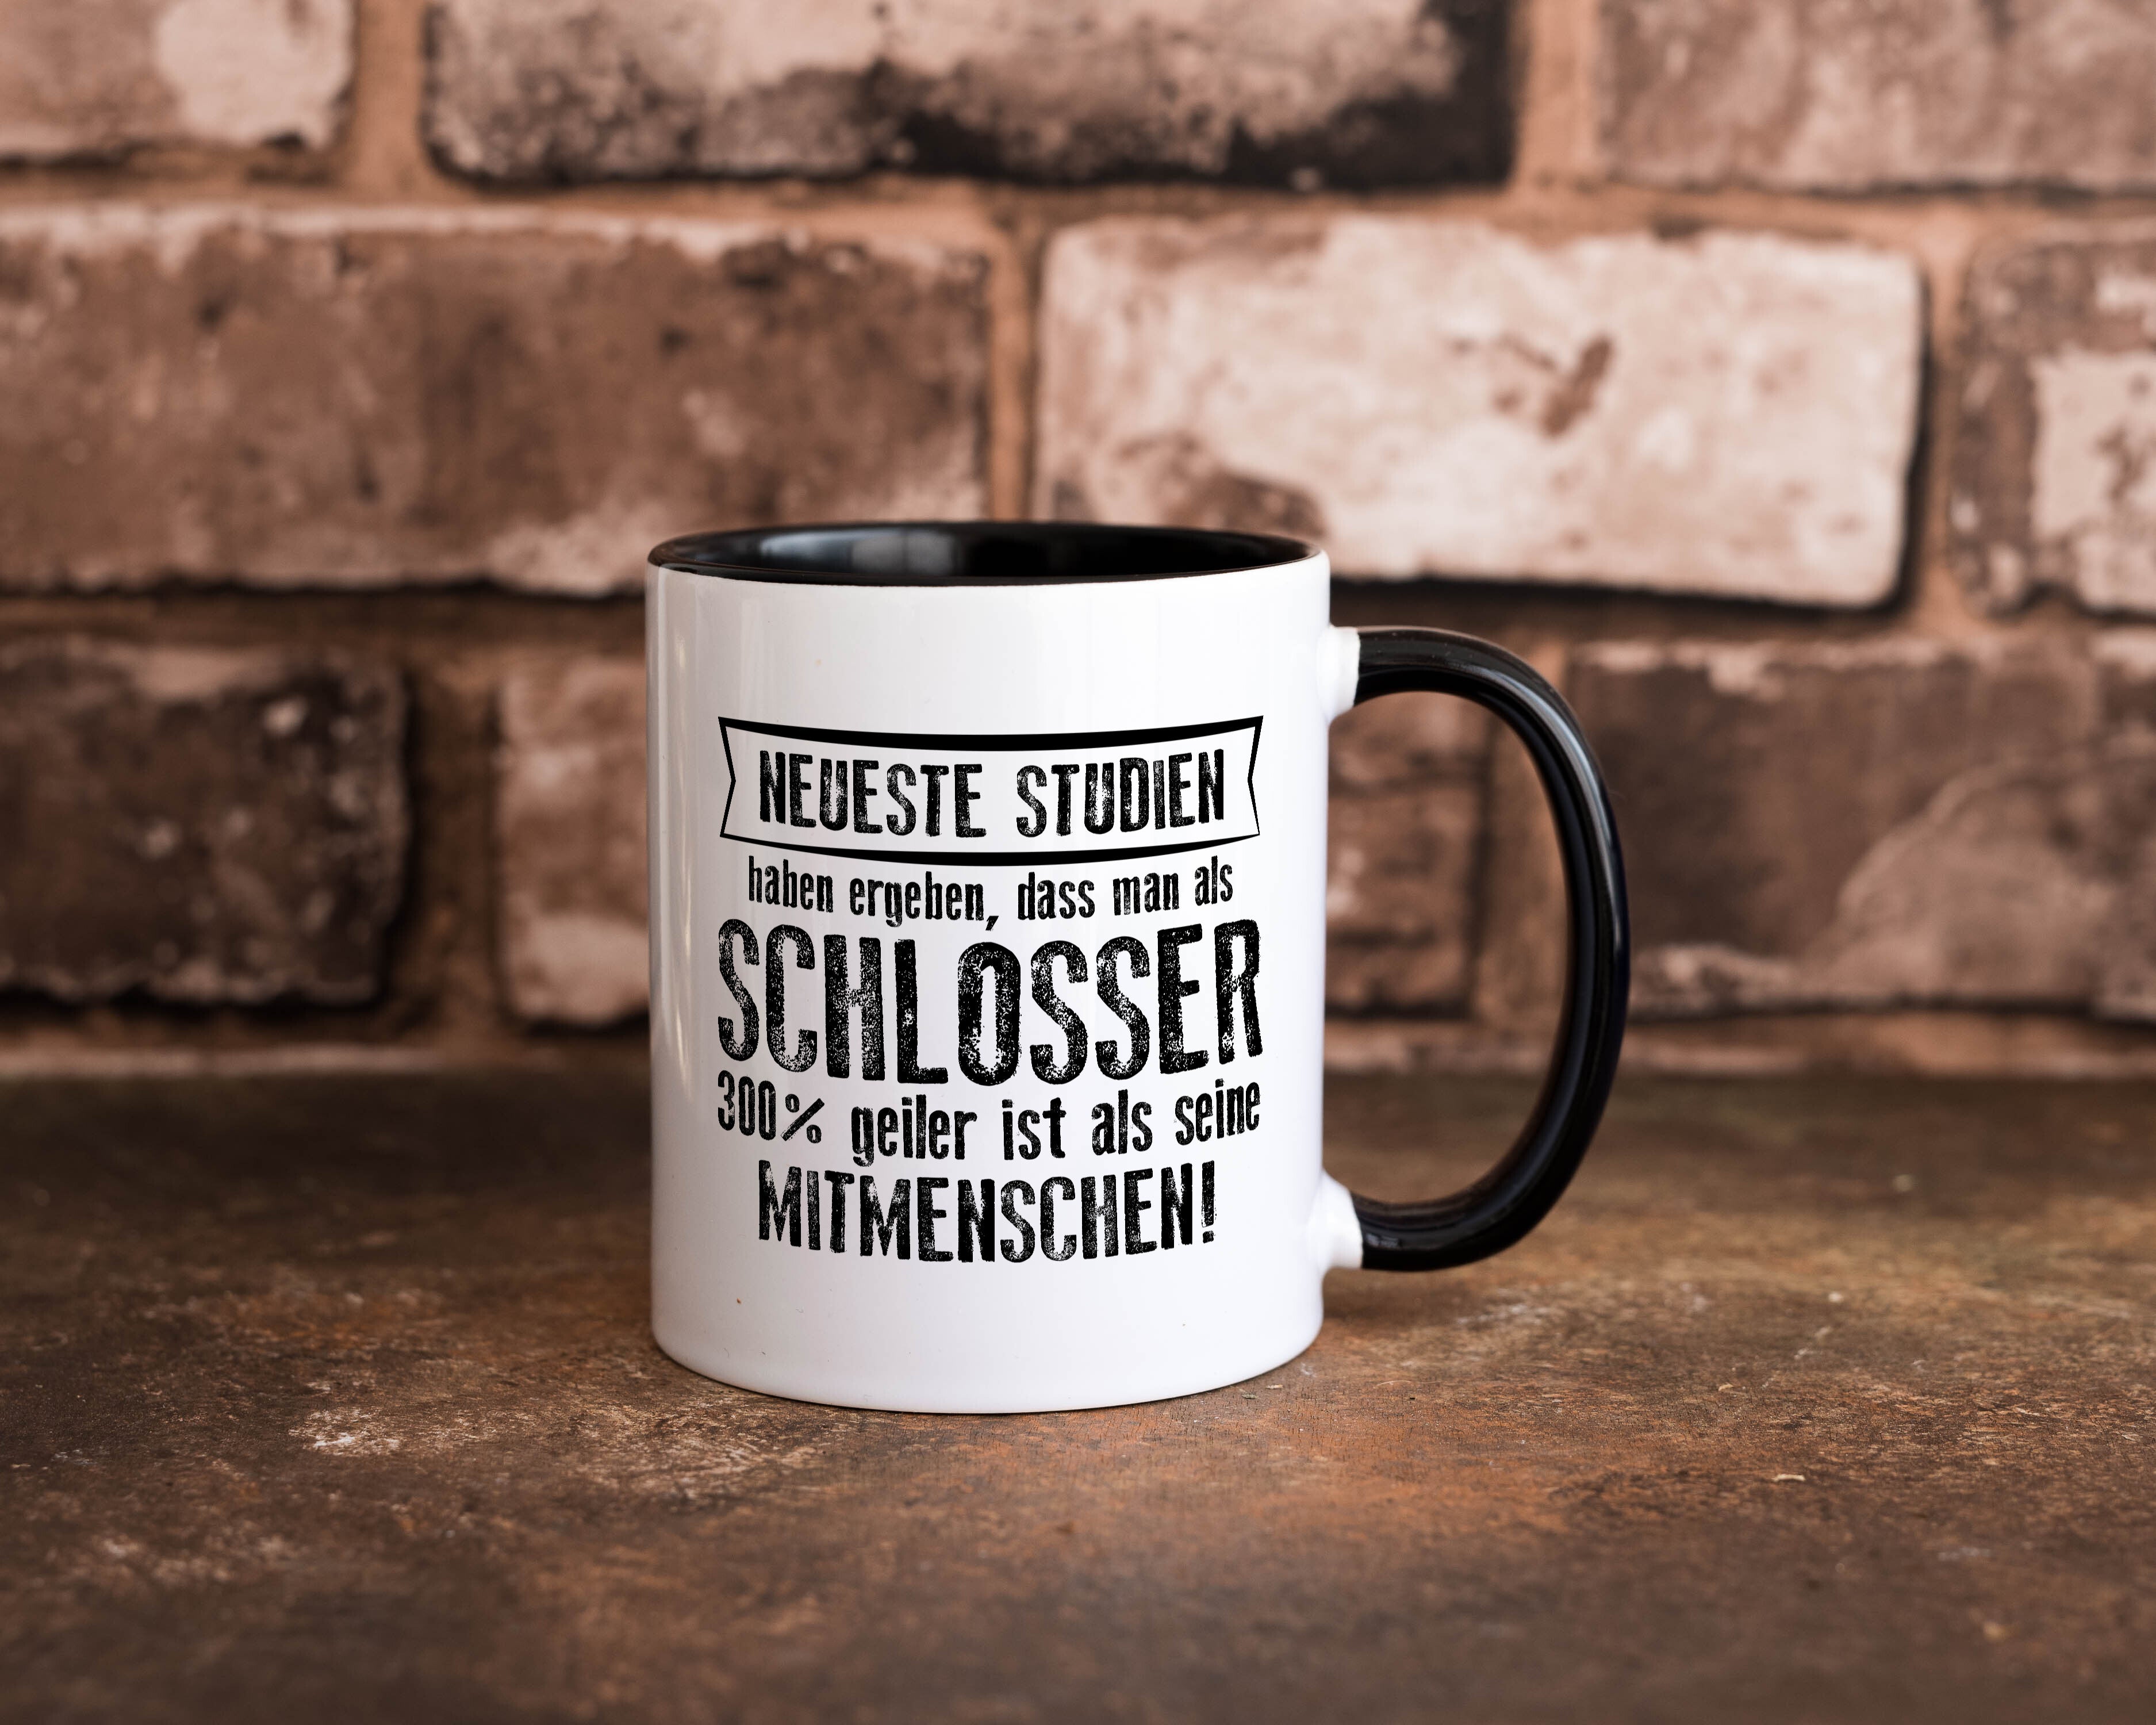 Neuste Studien: Schlosser | Beruf Schlosserei Tasse Weiß - Schwarz - Kaffeetasse / Geschenk / Familie